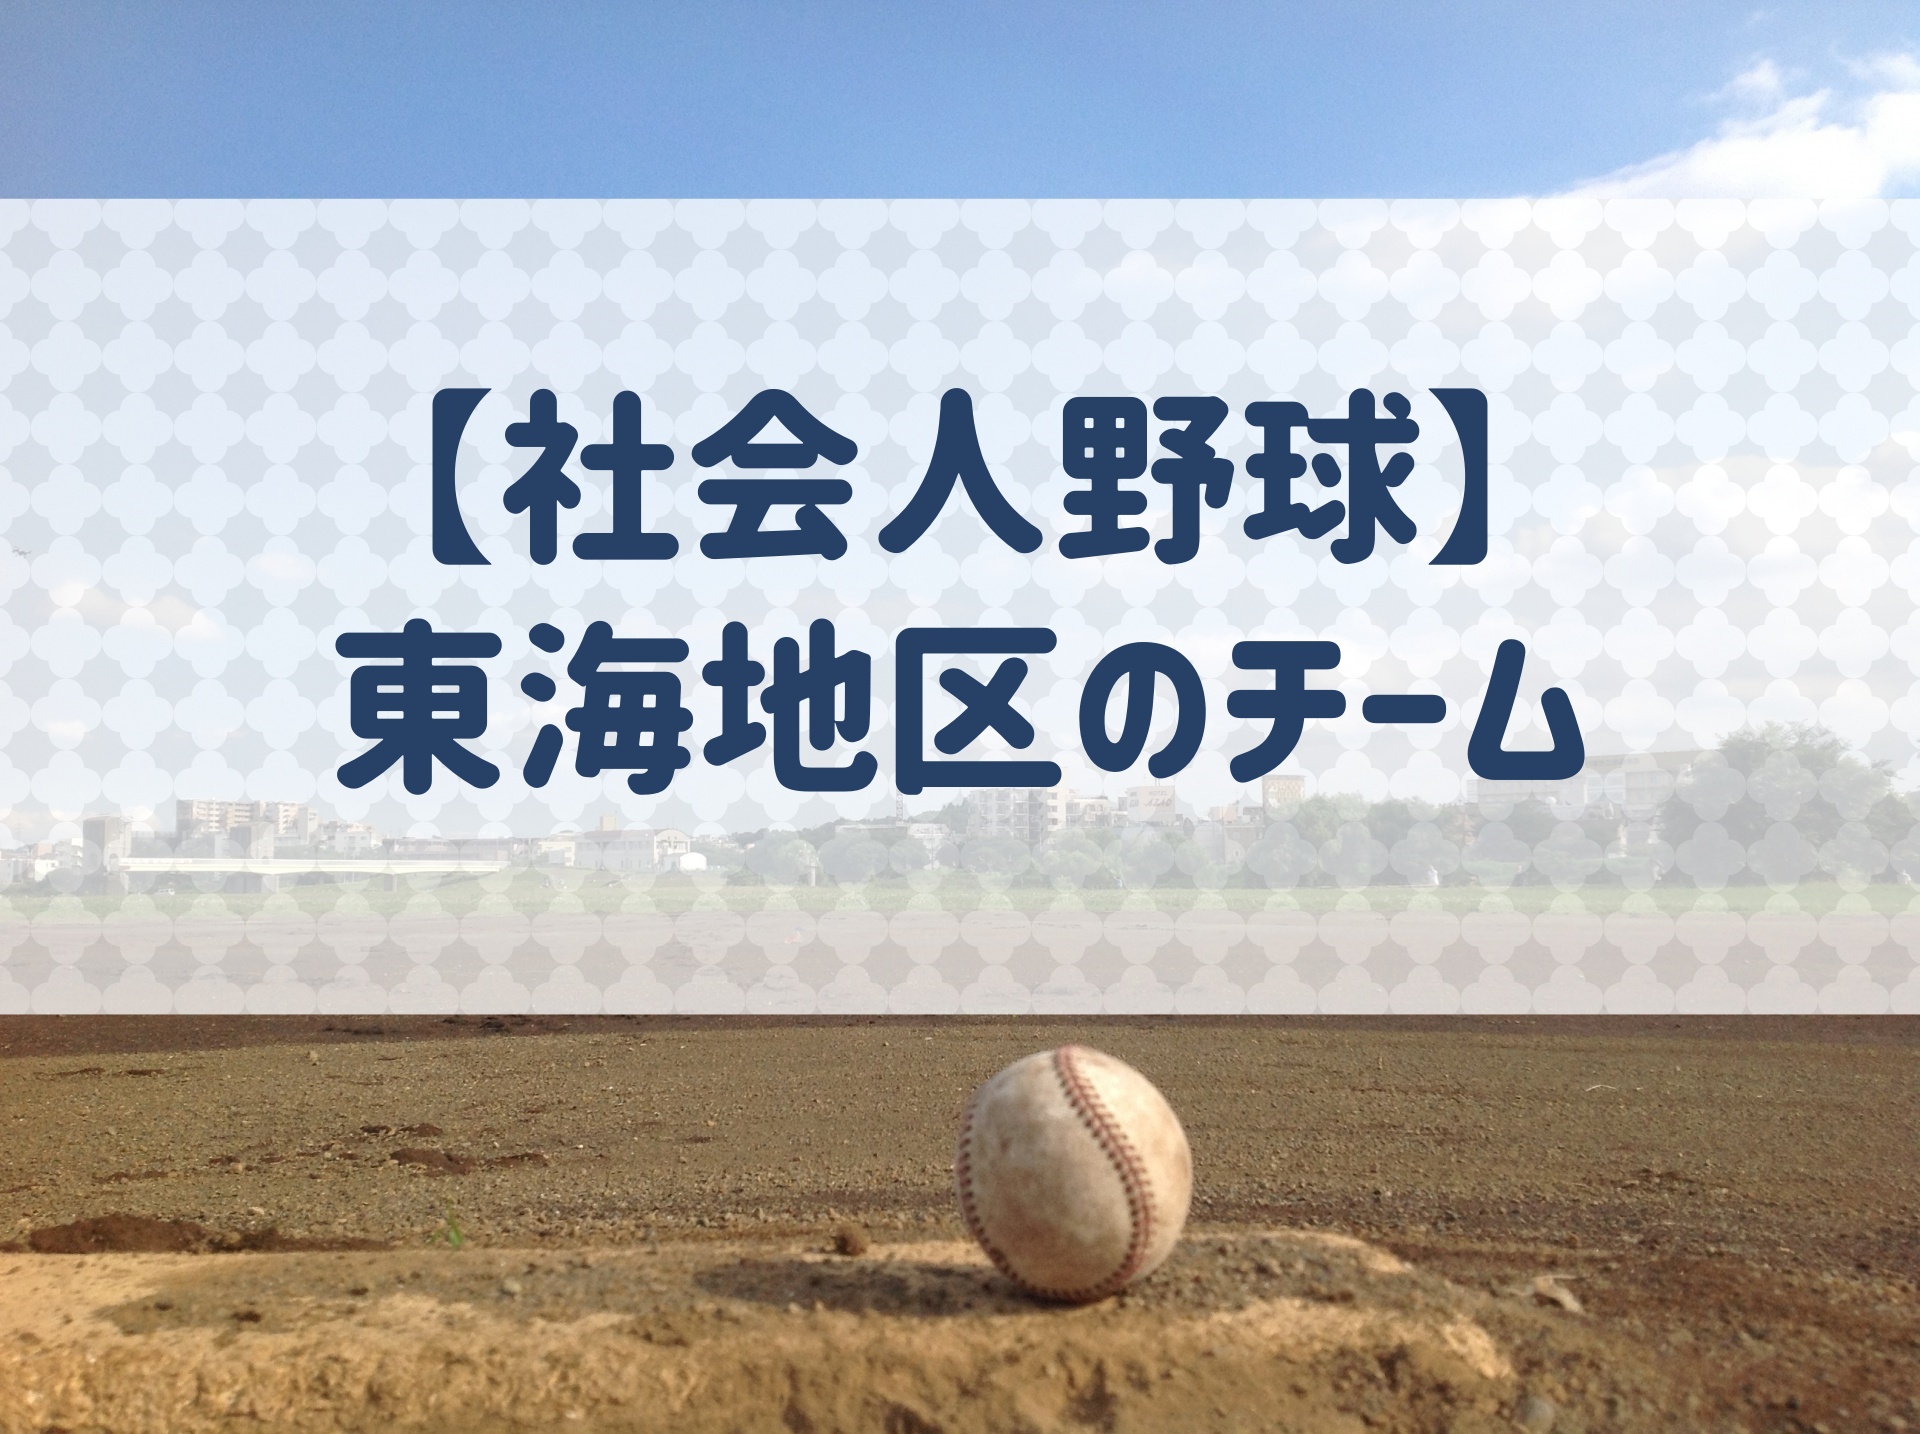 社会人野球 東海地方 チームの特徴と実績などを紹介 野球用語 Net